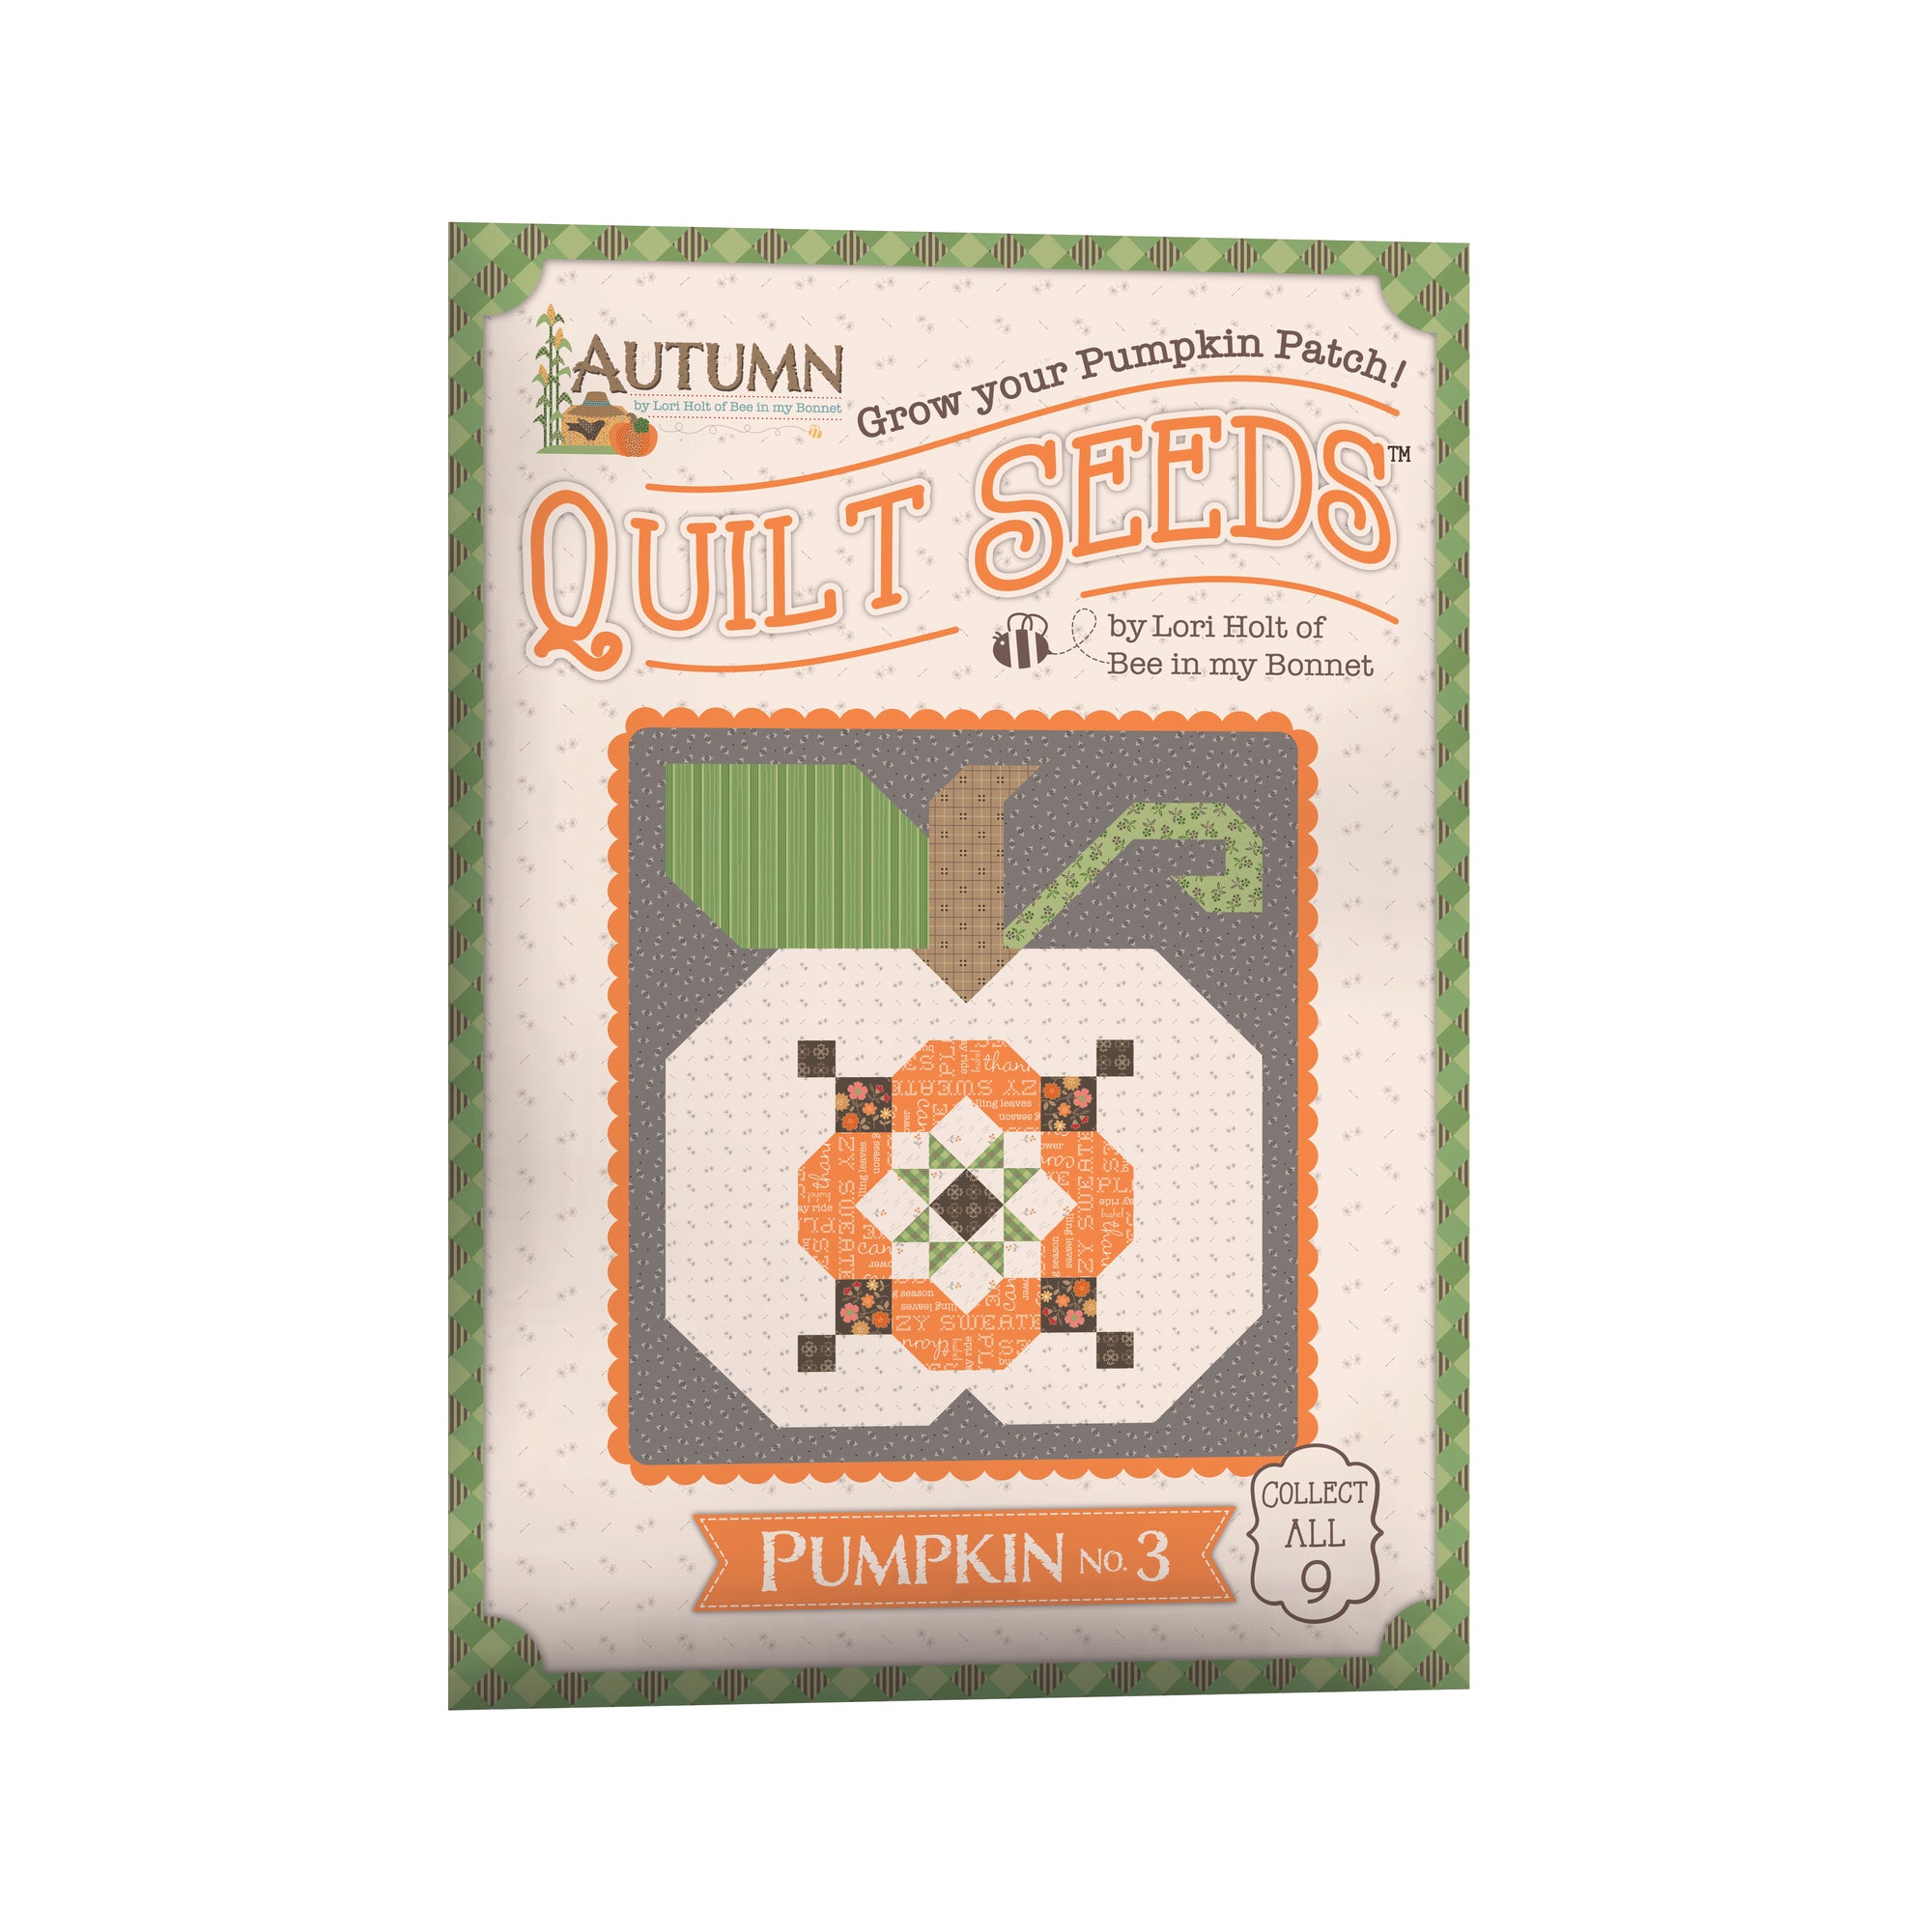 Lori Holt Autumn Quilt Seeds™ Pattern Pumpkin No 3